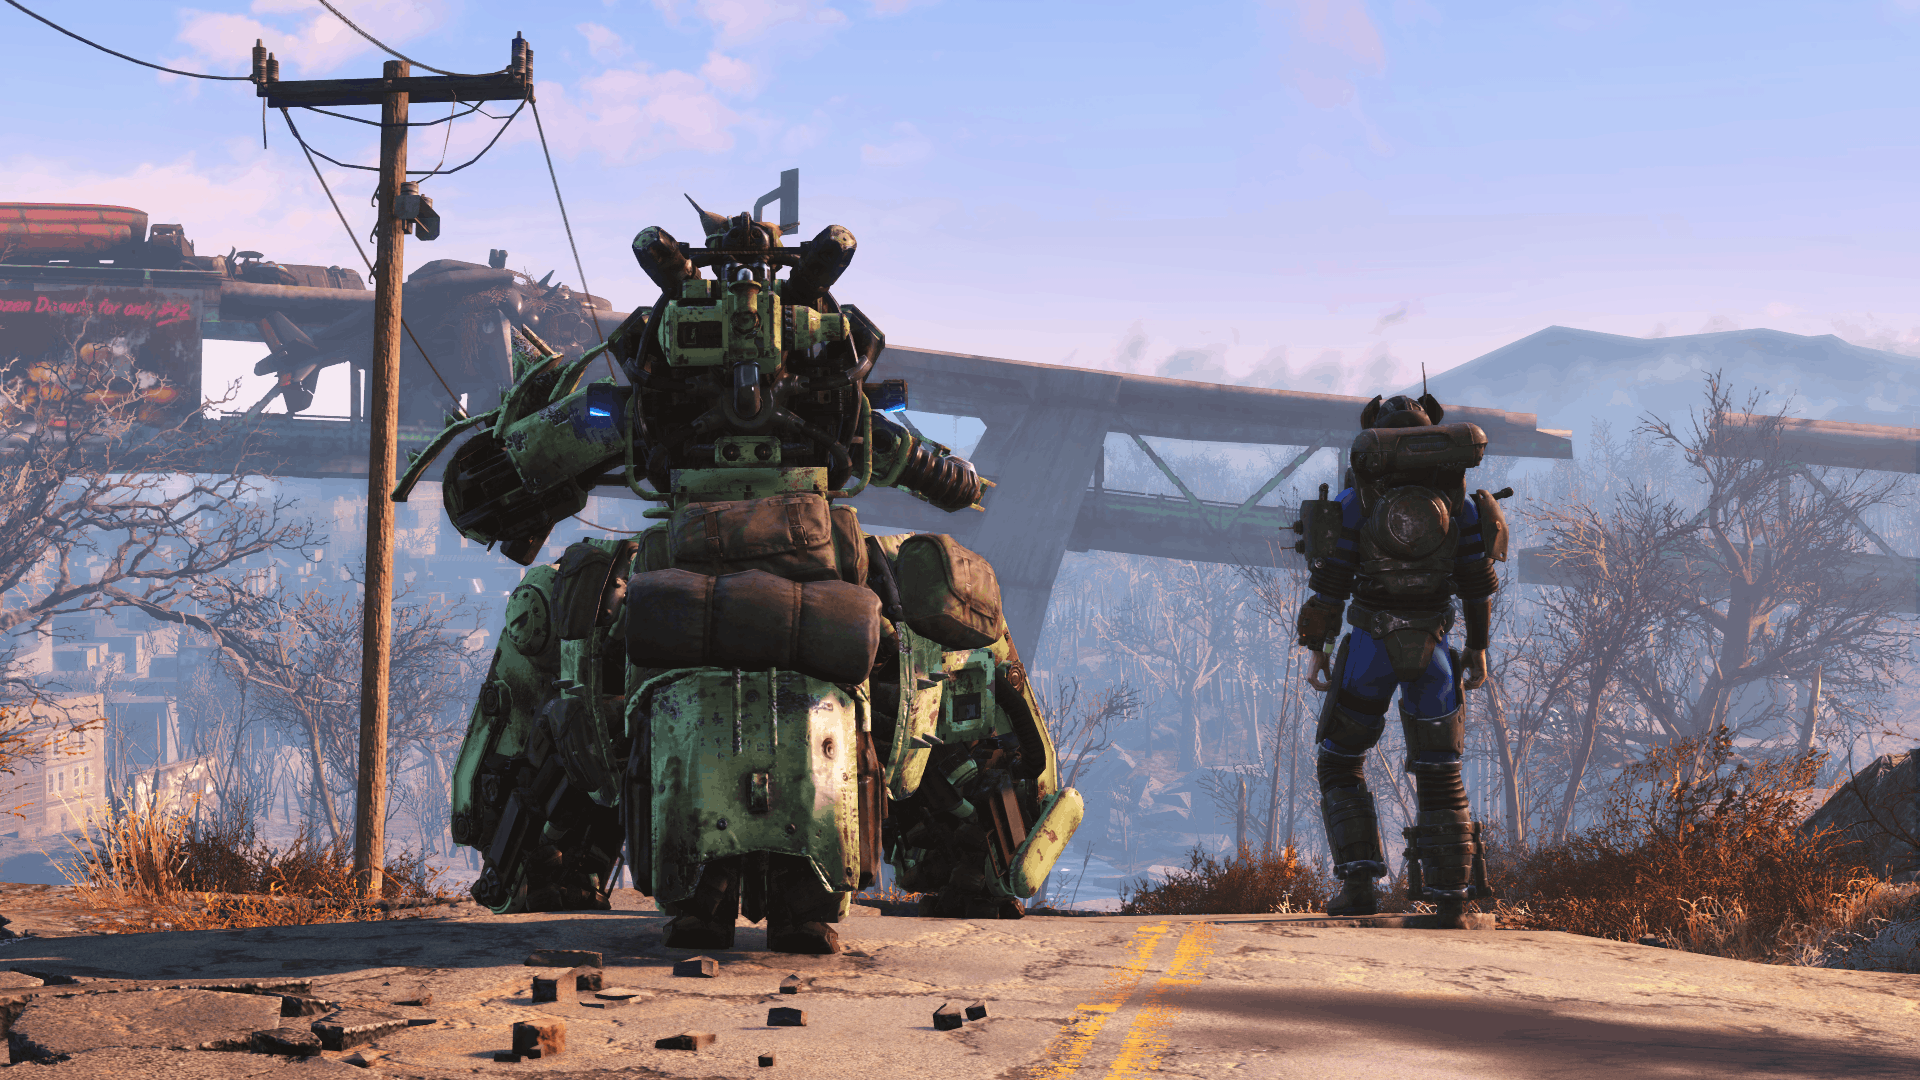 รายละเอียด Fallout 4 DLC | GamingDose - ข่าวเกม รีวิวเกม บทความเกม เกมคอม เกมคอนโซล เกม PS4 เกมมือถือ